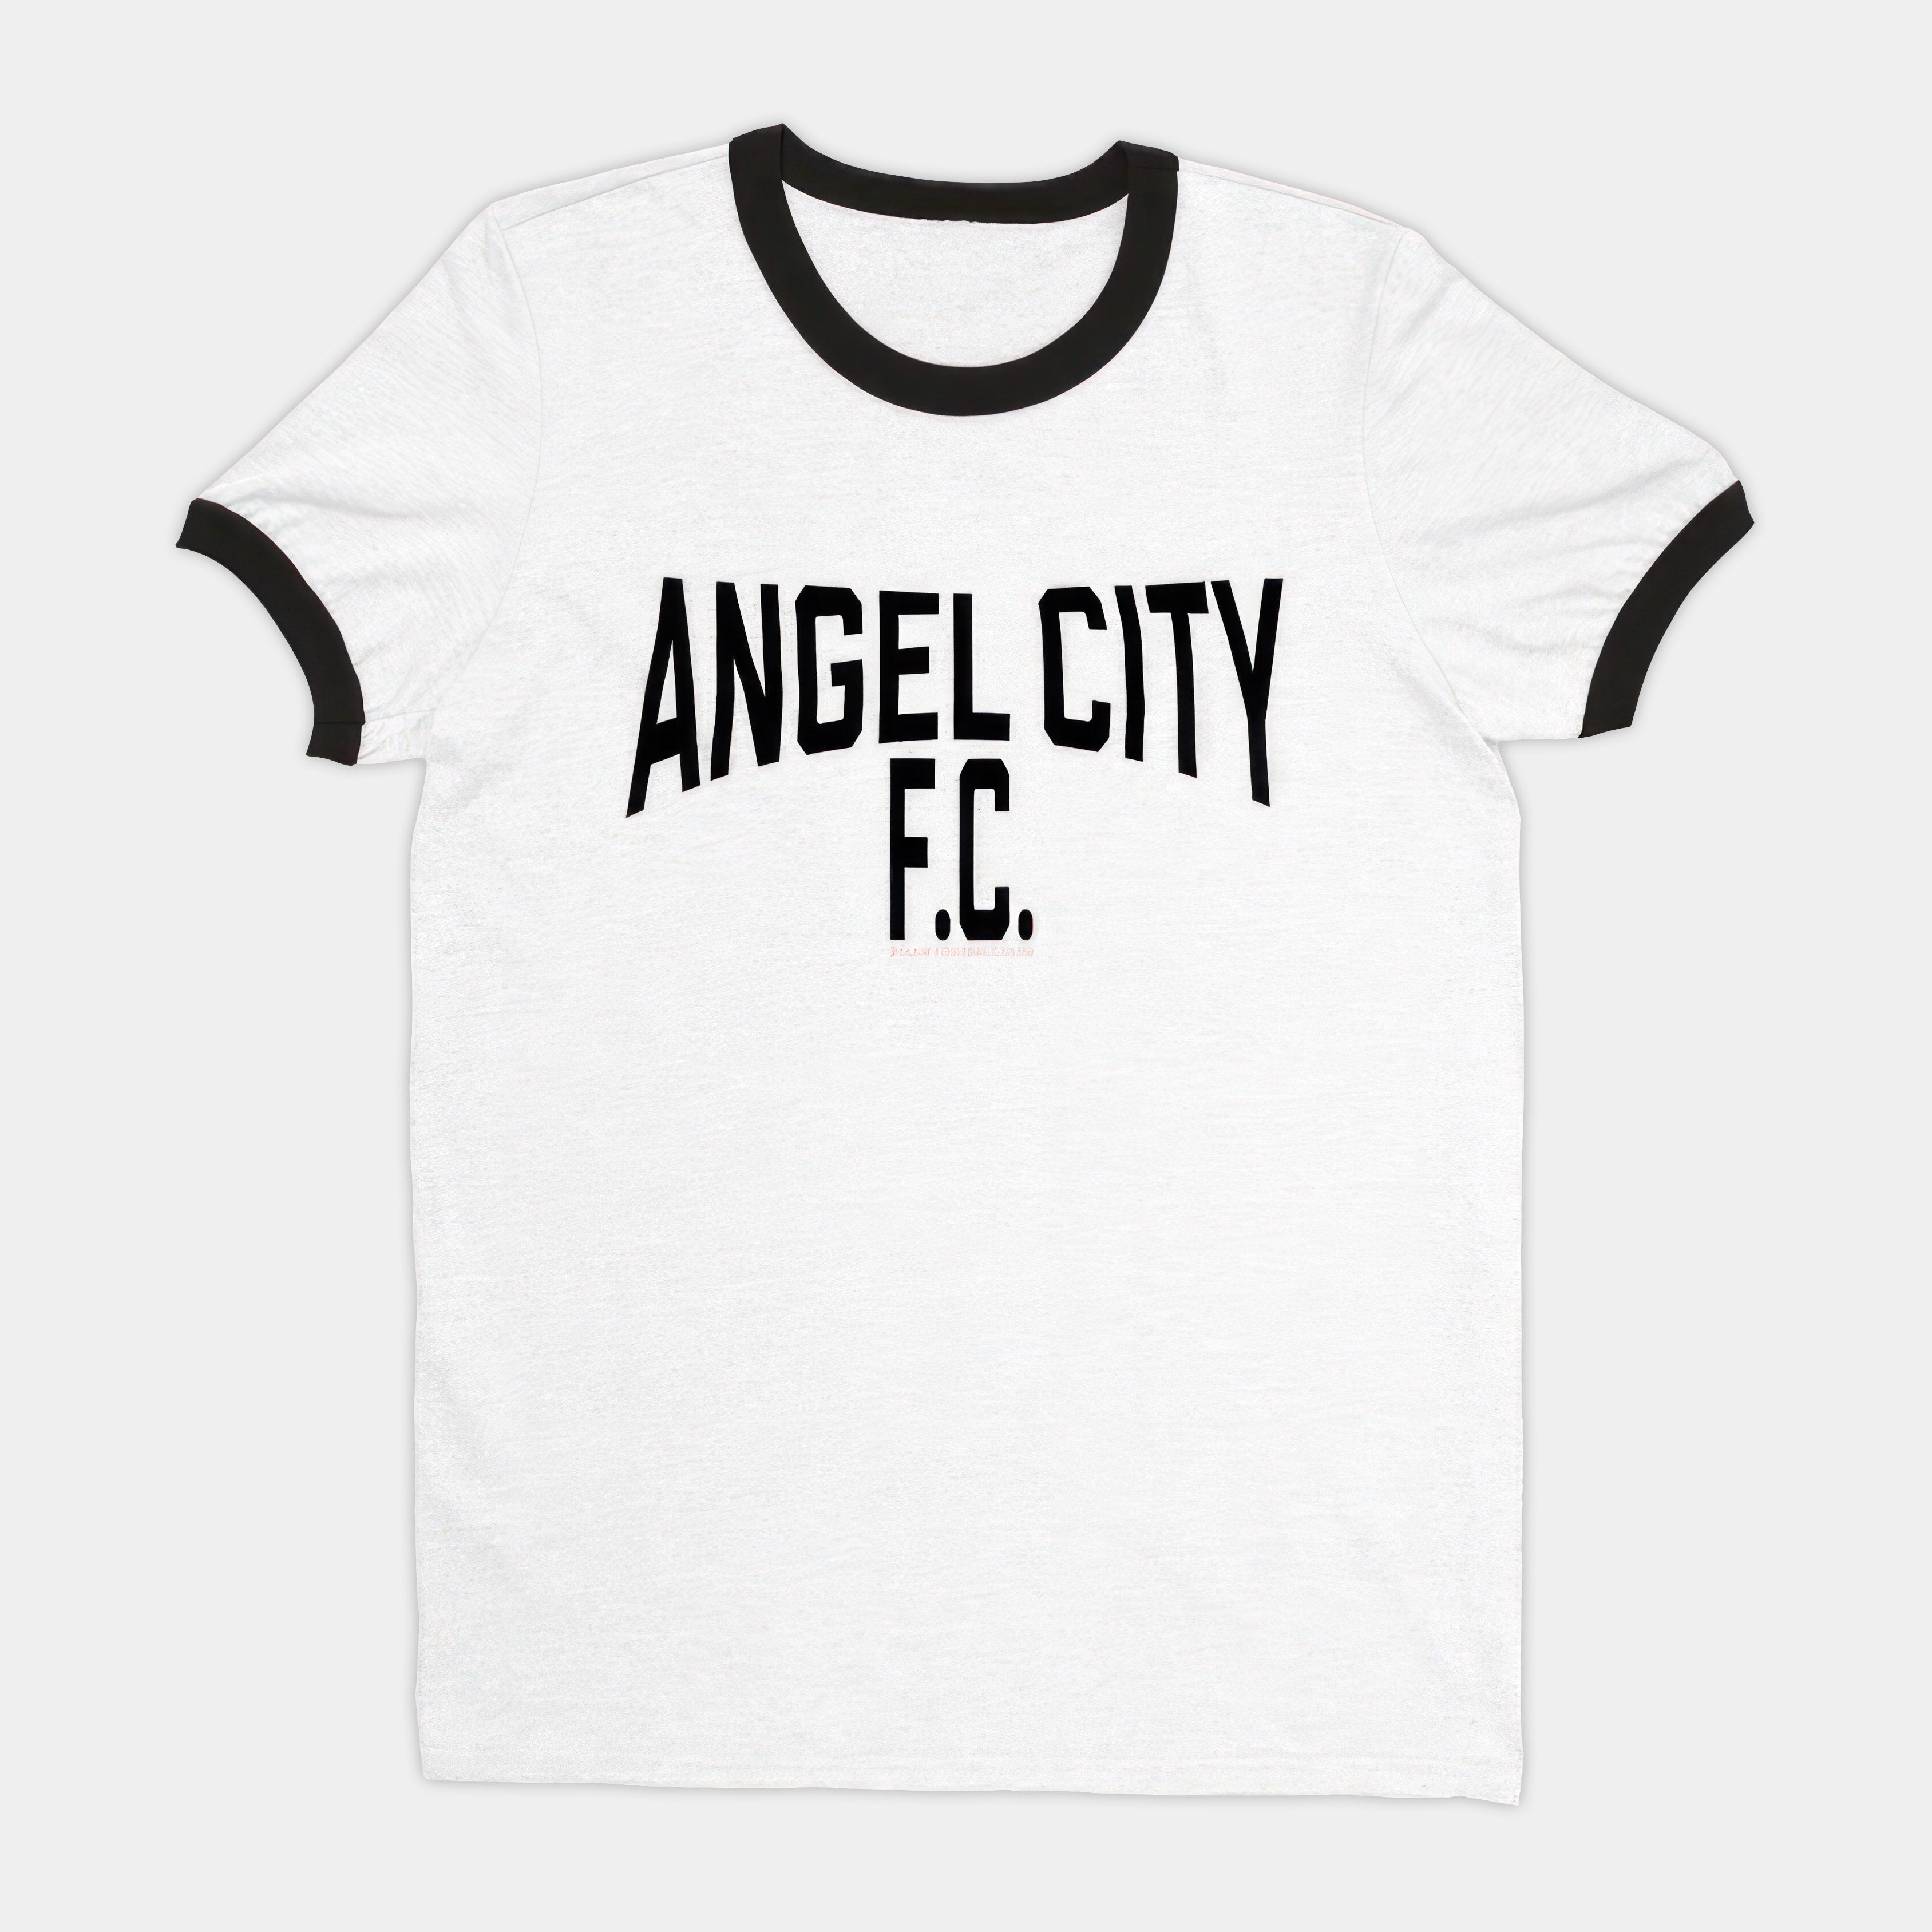 Imagine (Angel City) Ringer T-shirt